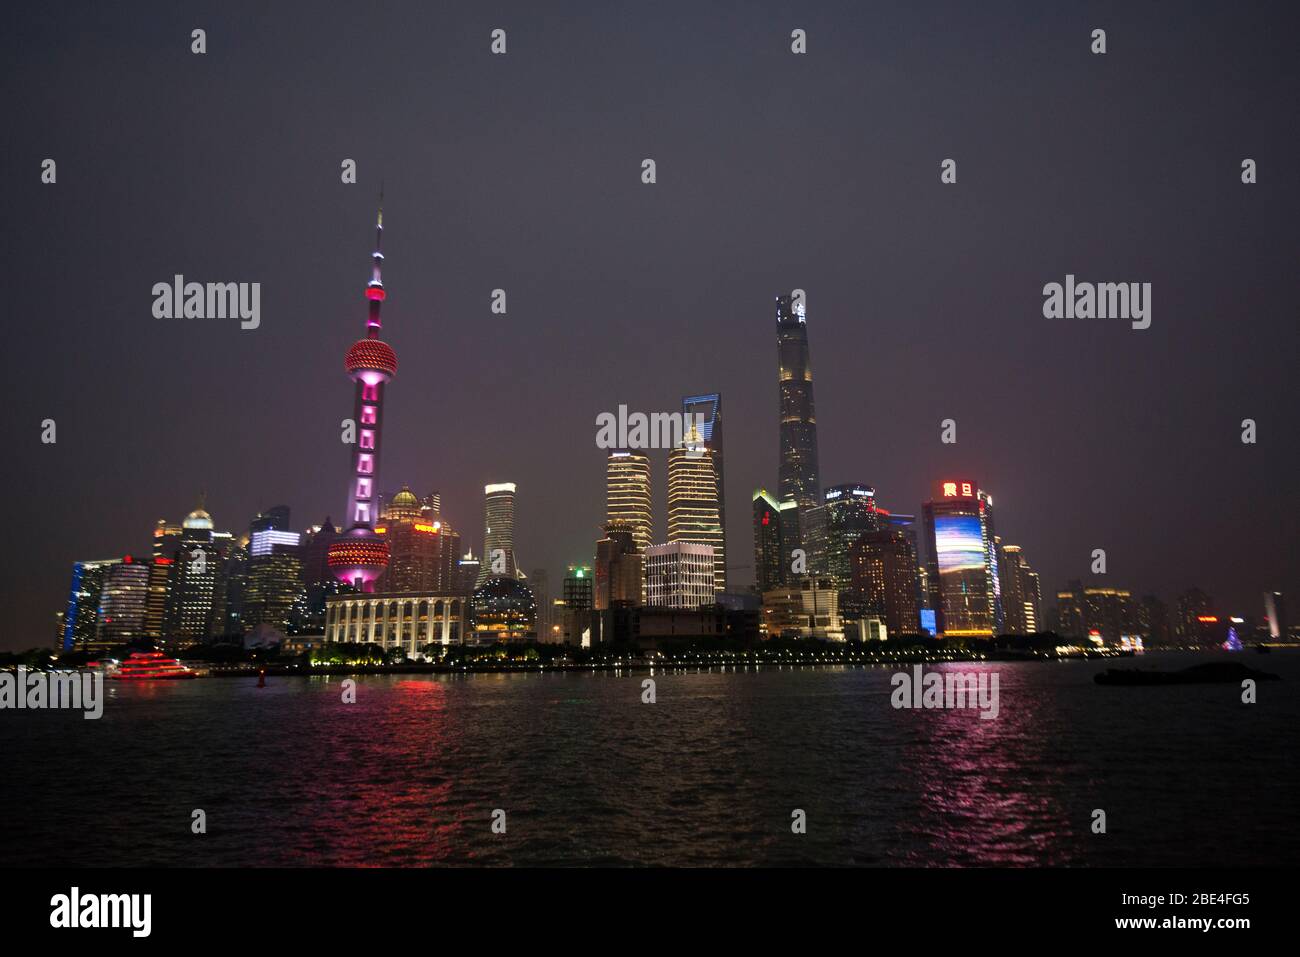 Lo skyline di Shanghai Pudong si affaccia sul fiume Huangpu, vista dal Bund di notte. Cina Foto Stock